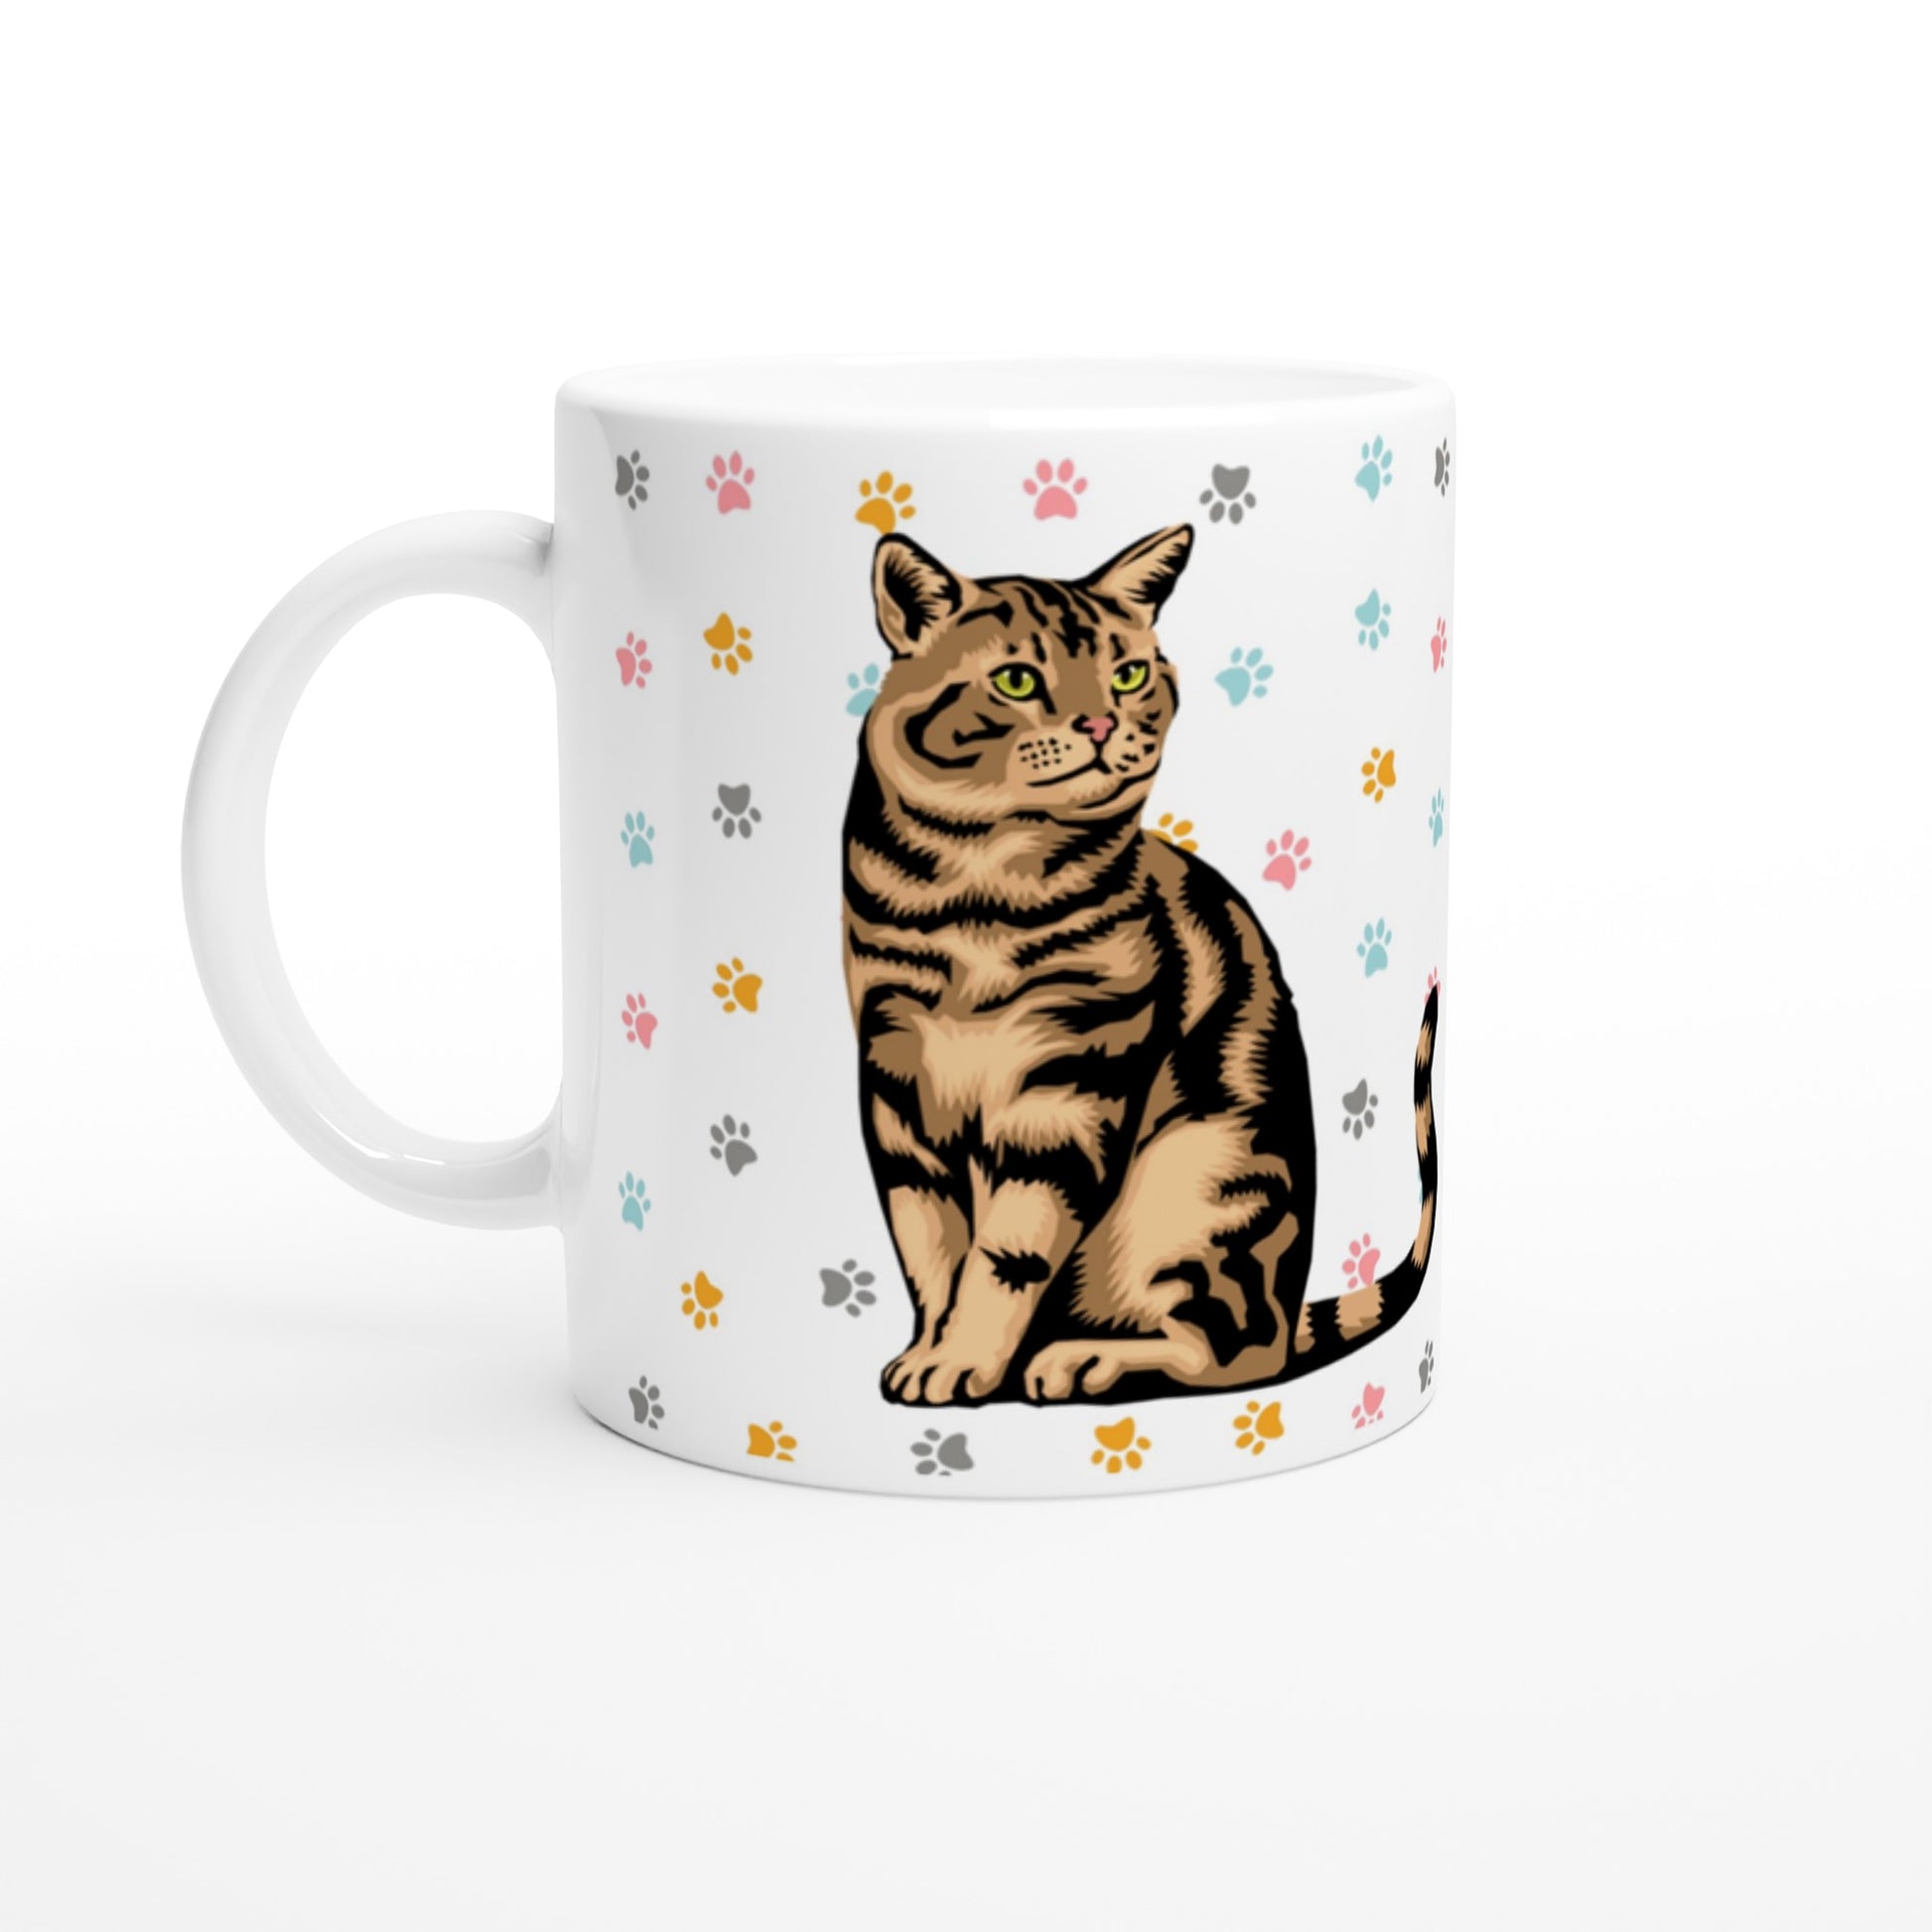 Taza de cerámica con gato